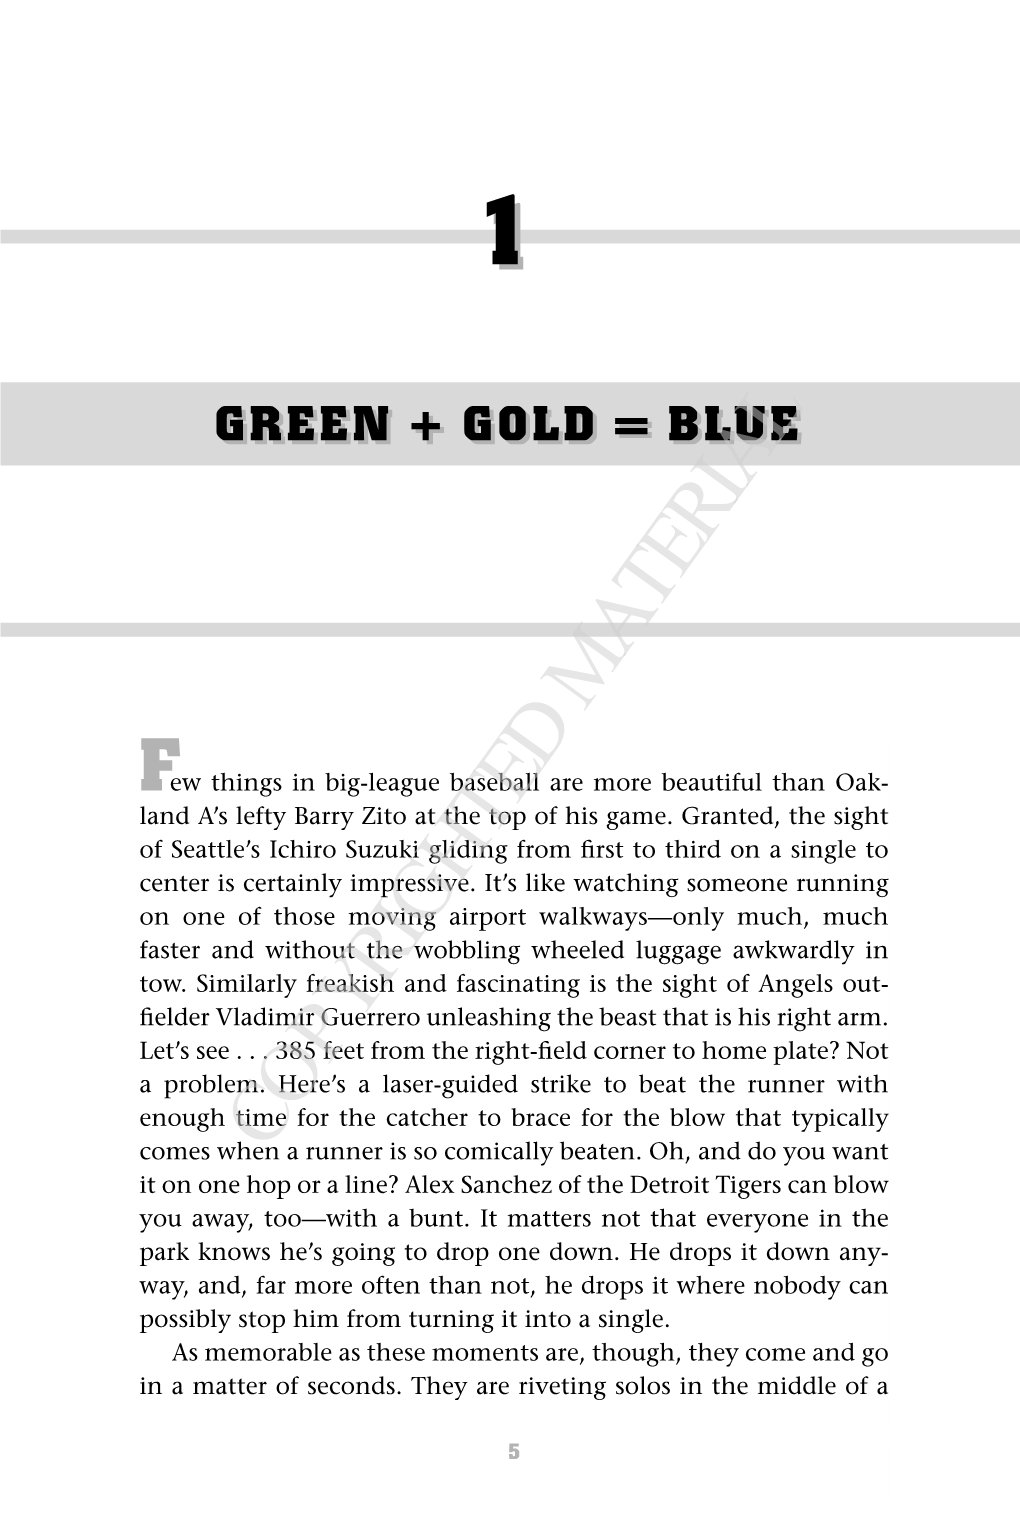 Green + Gold = Blue 11